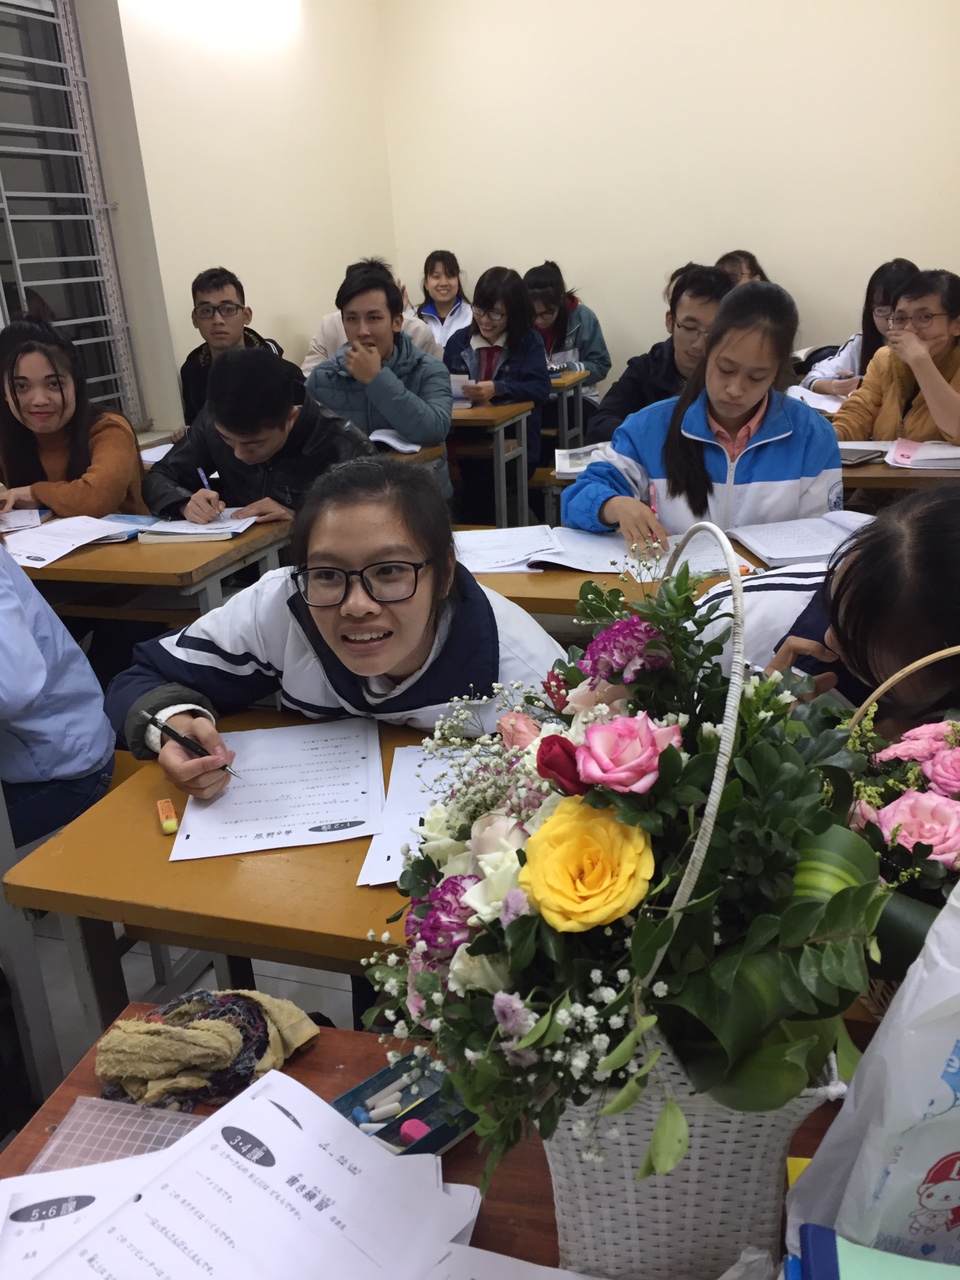 Tuyển sinh khóa học tiếng Trung Ninh Giang Hải Dương  chất lượng cao